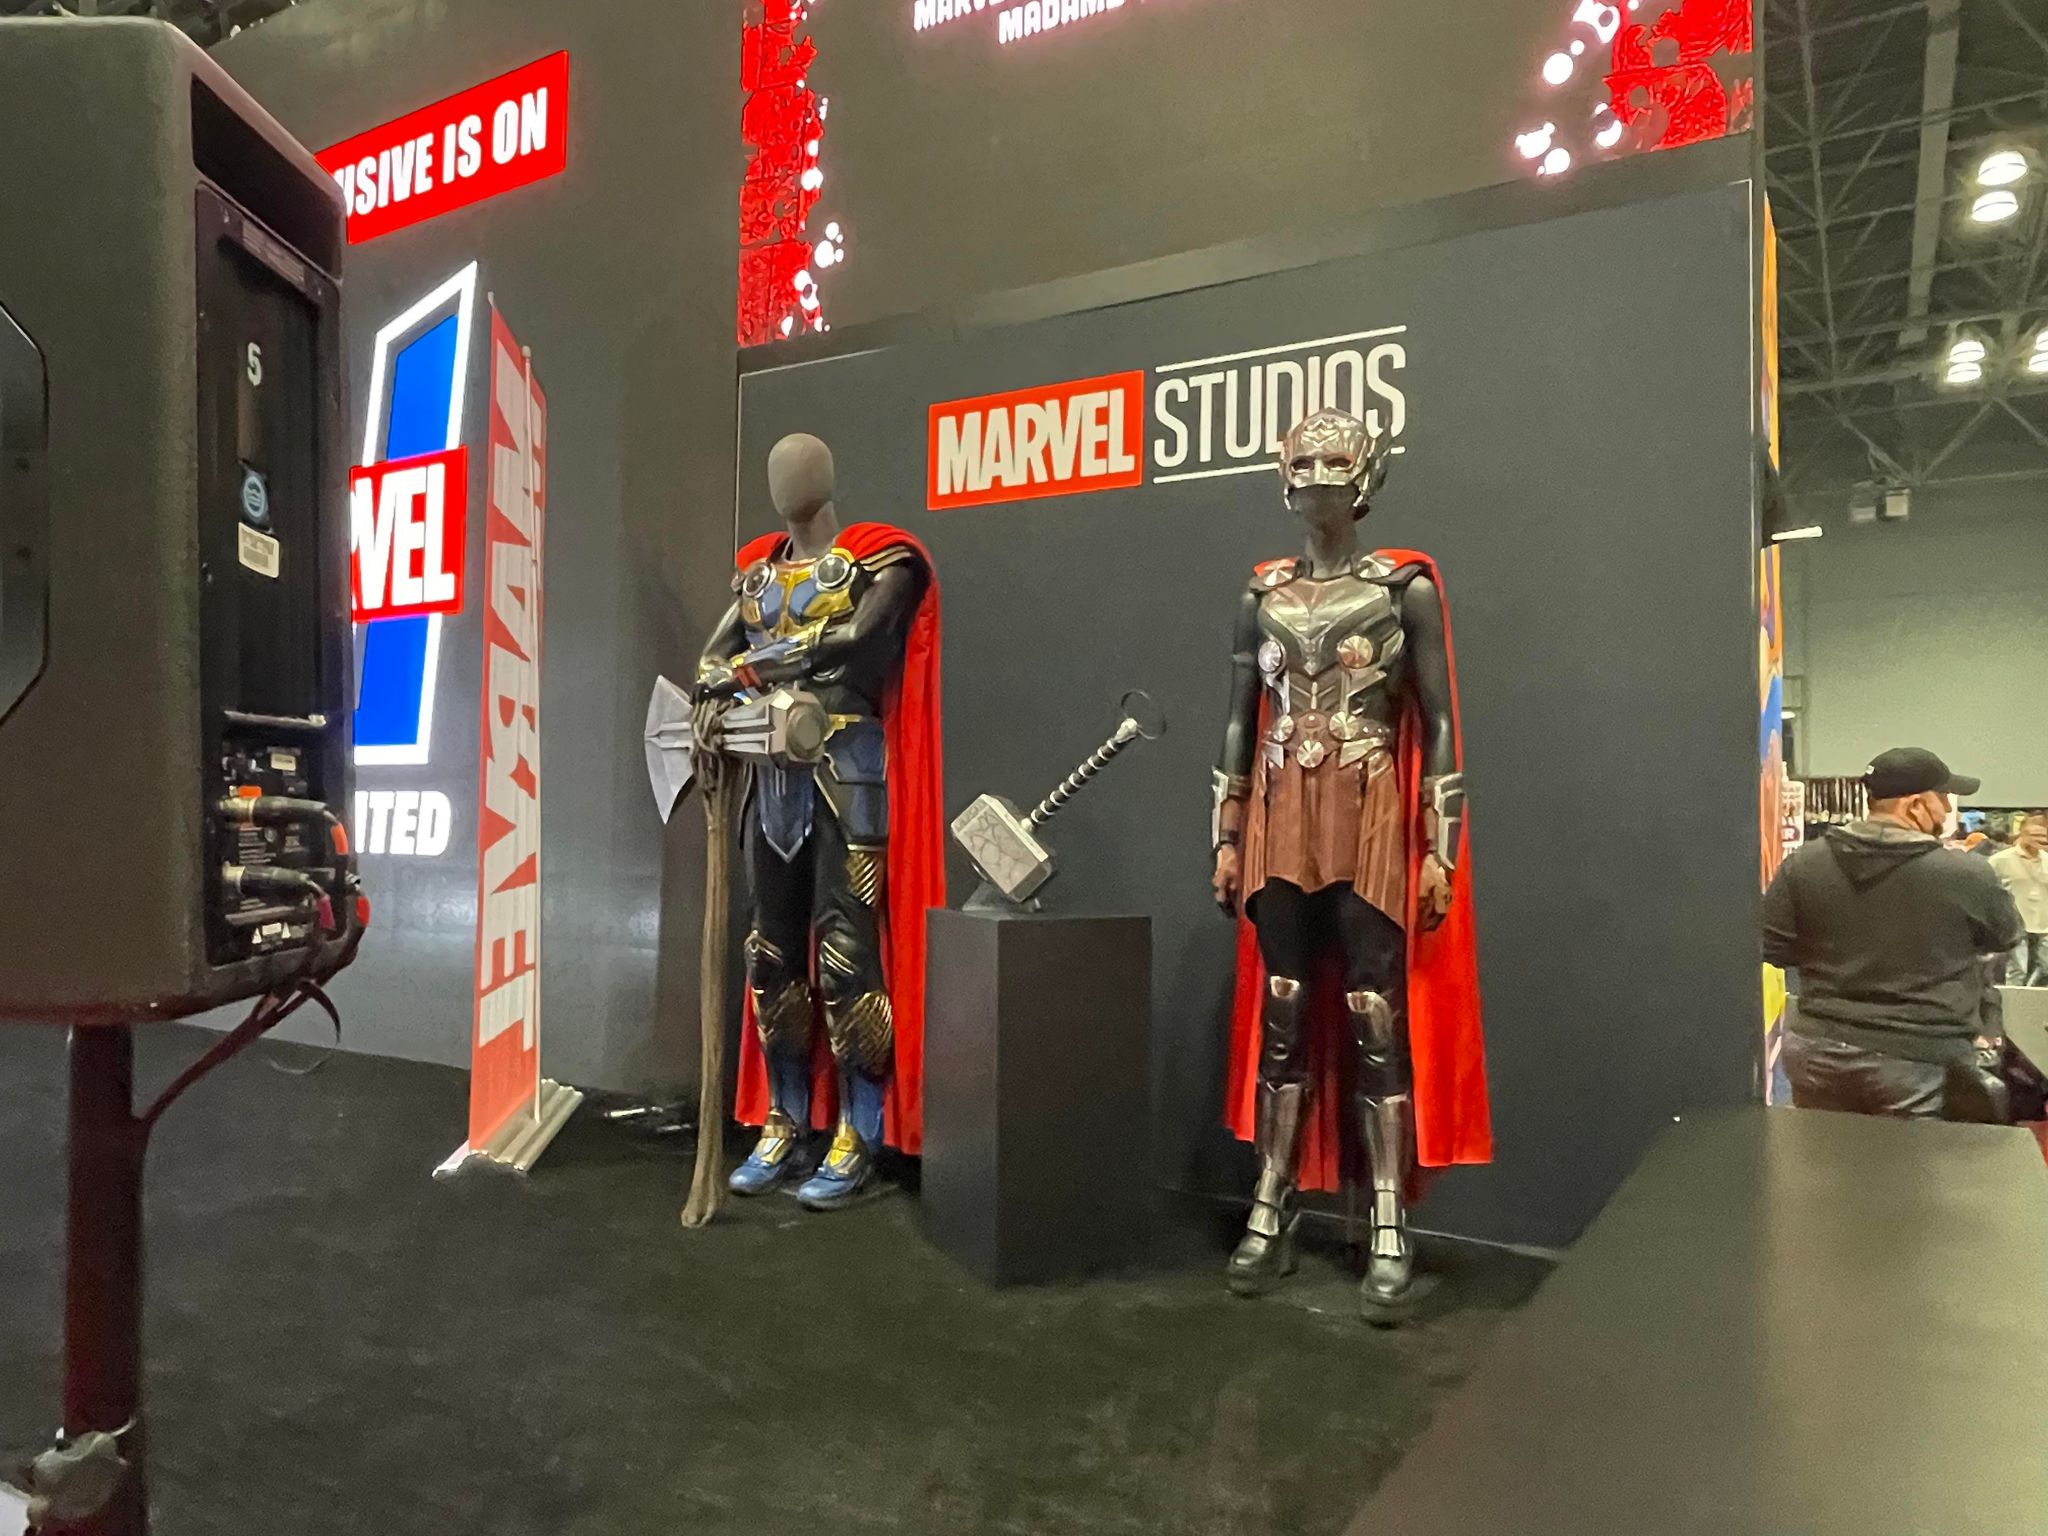 Marvel Studios props